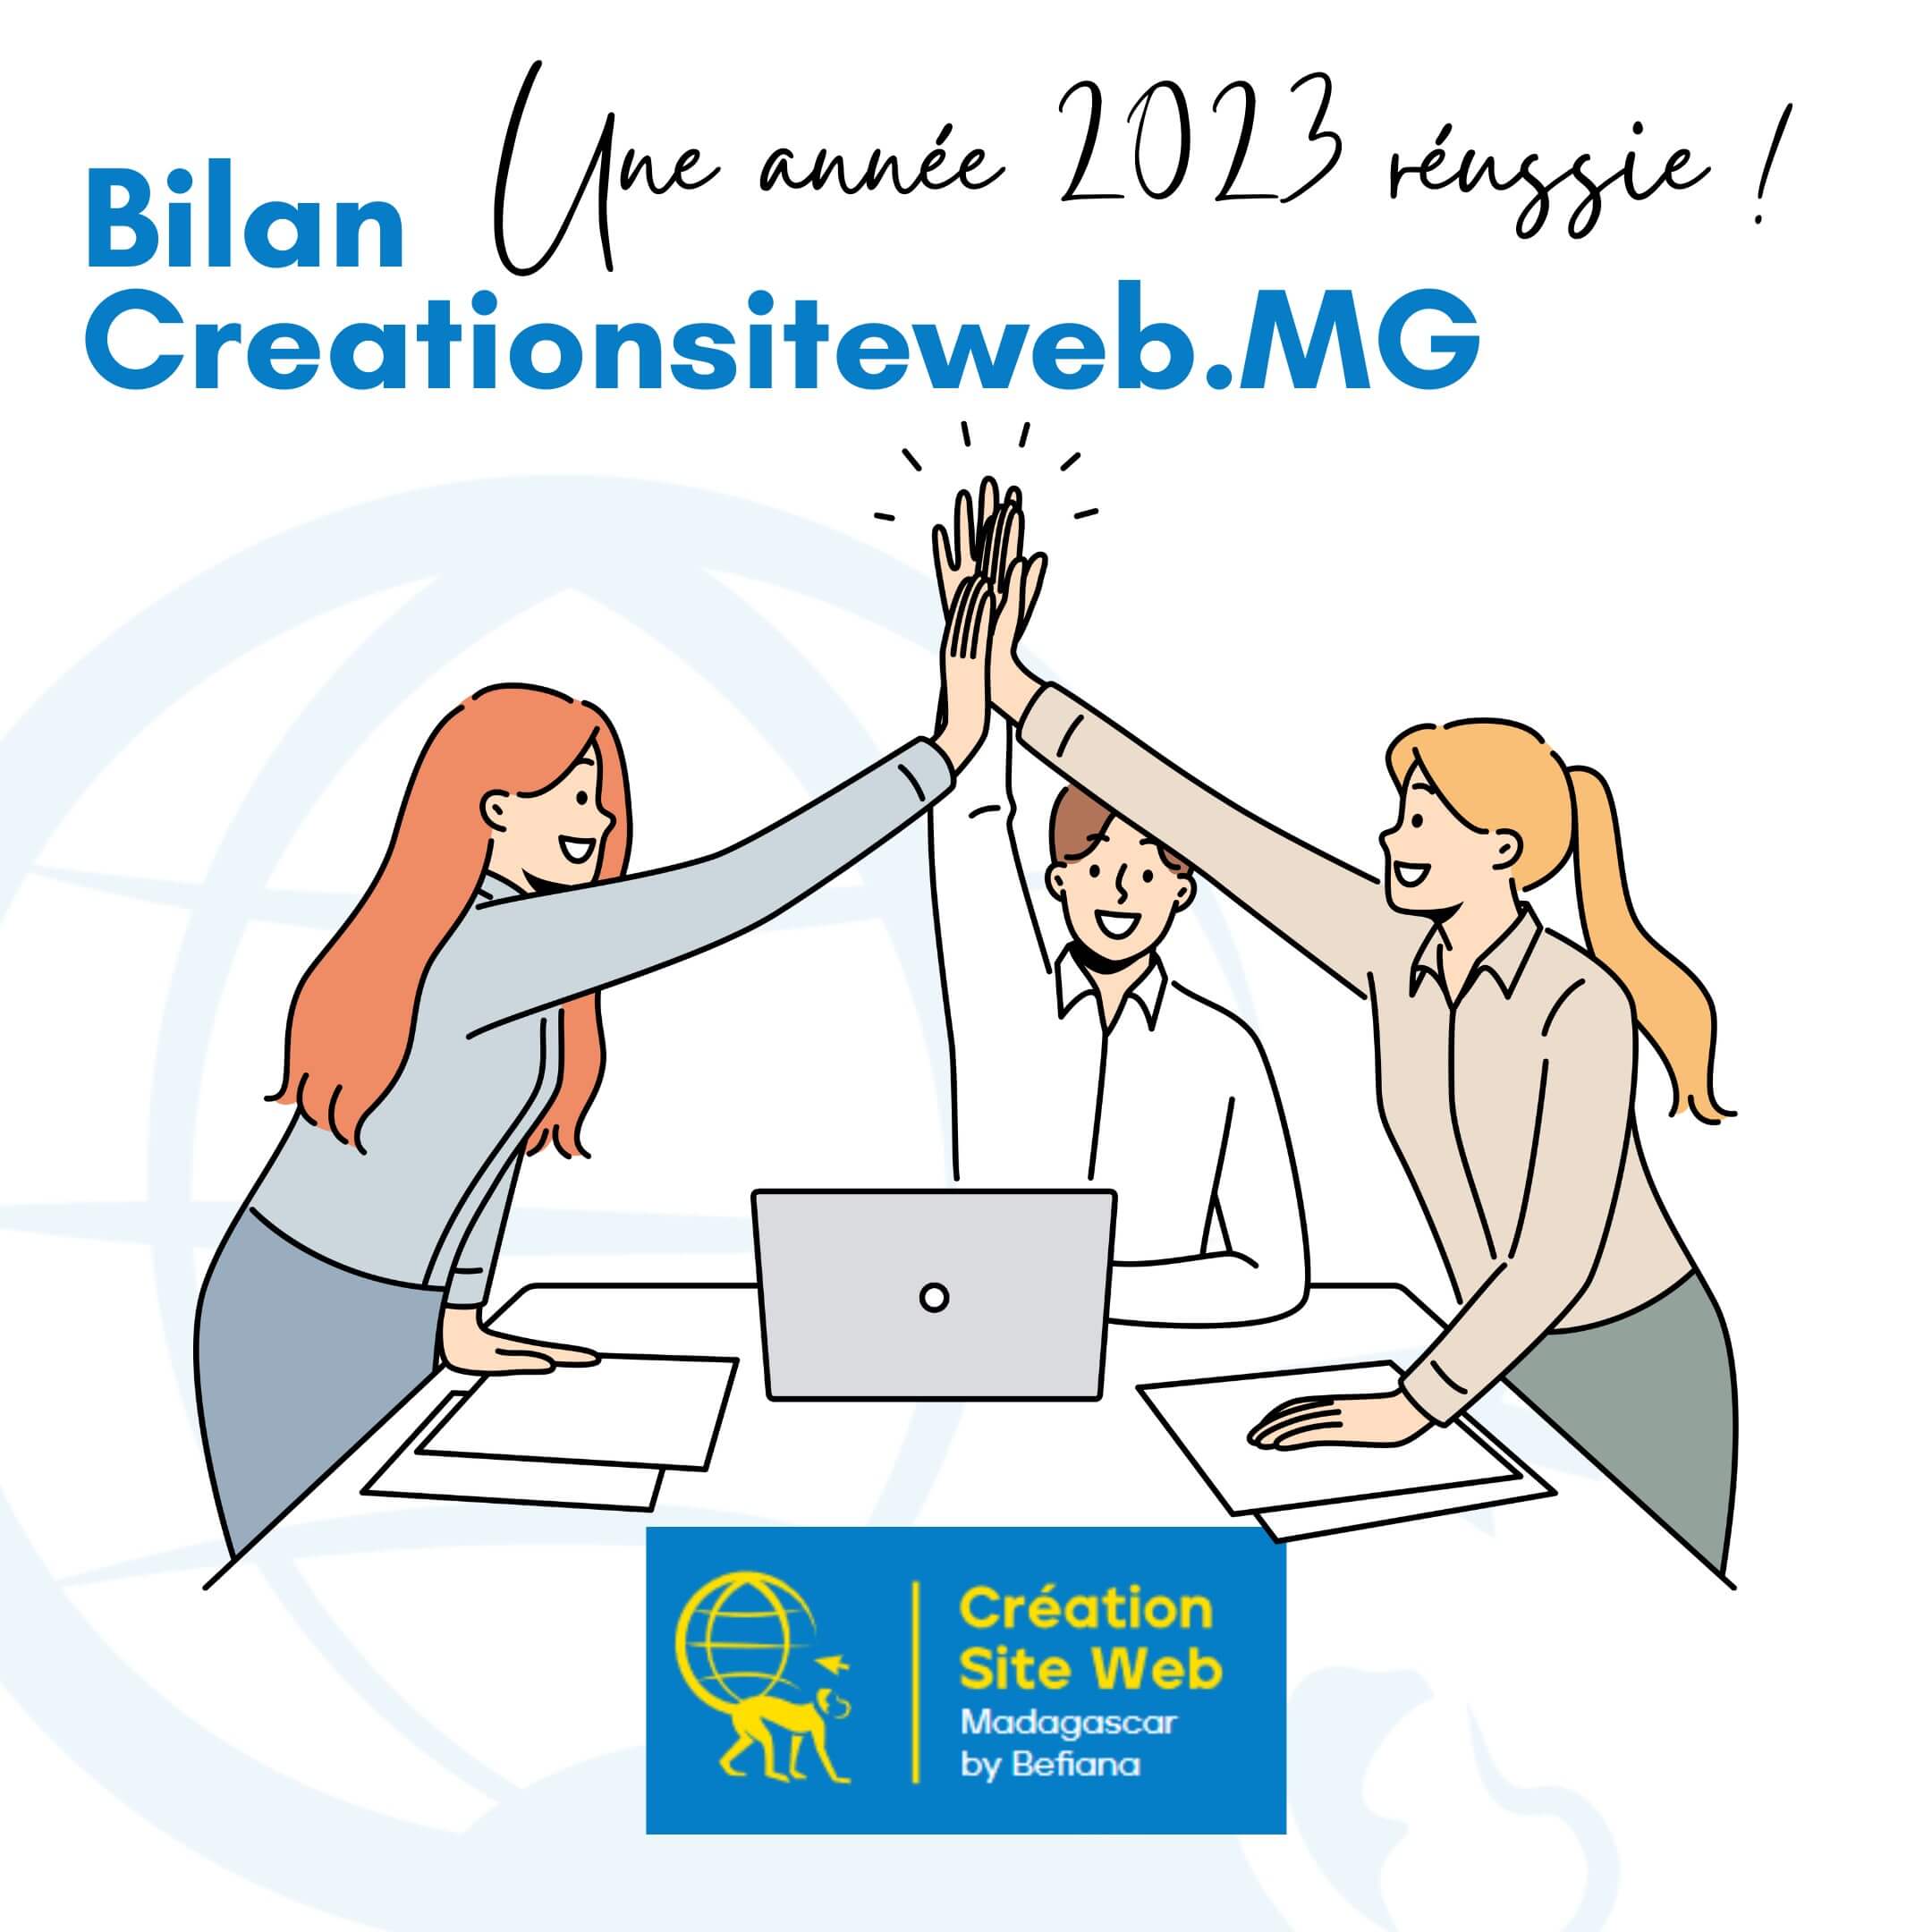 Bilan Creationsiteweb.MG : Une année 2023 réussie !